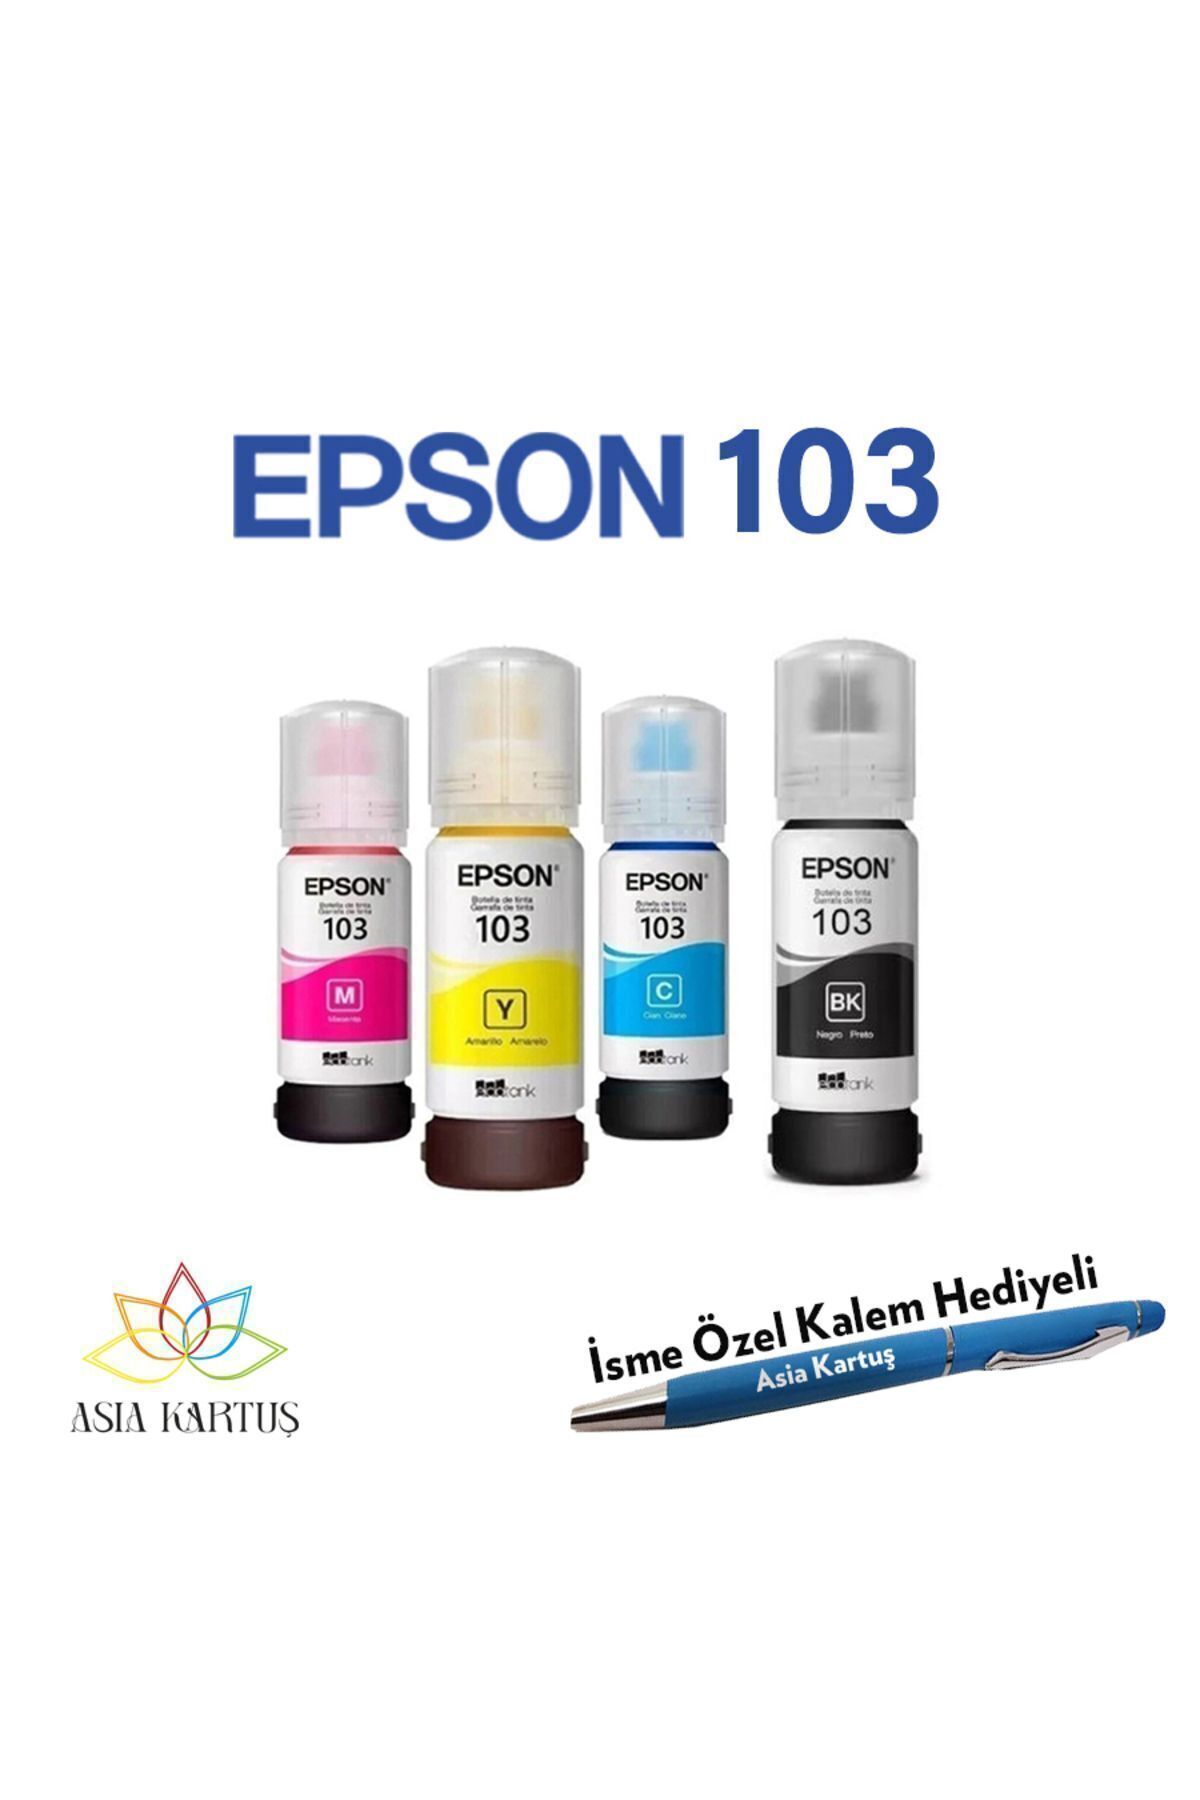 Epson 103 Mürekkep Şişesi 4 Renk Kartuş, Epson EcoTank L3256 Uyumlu Kalem Hediyeli Mürekkep Seti